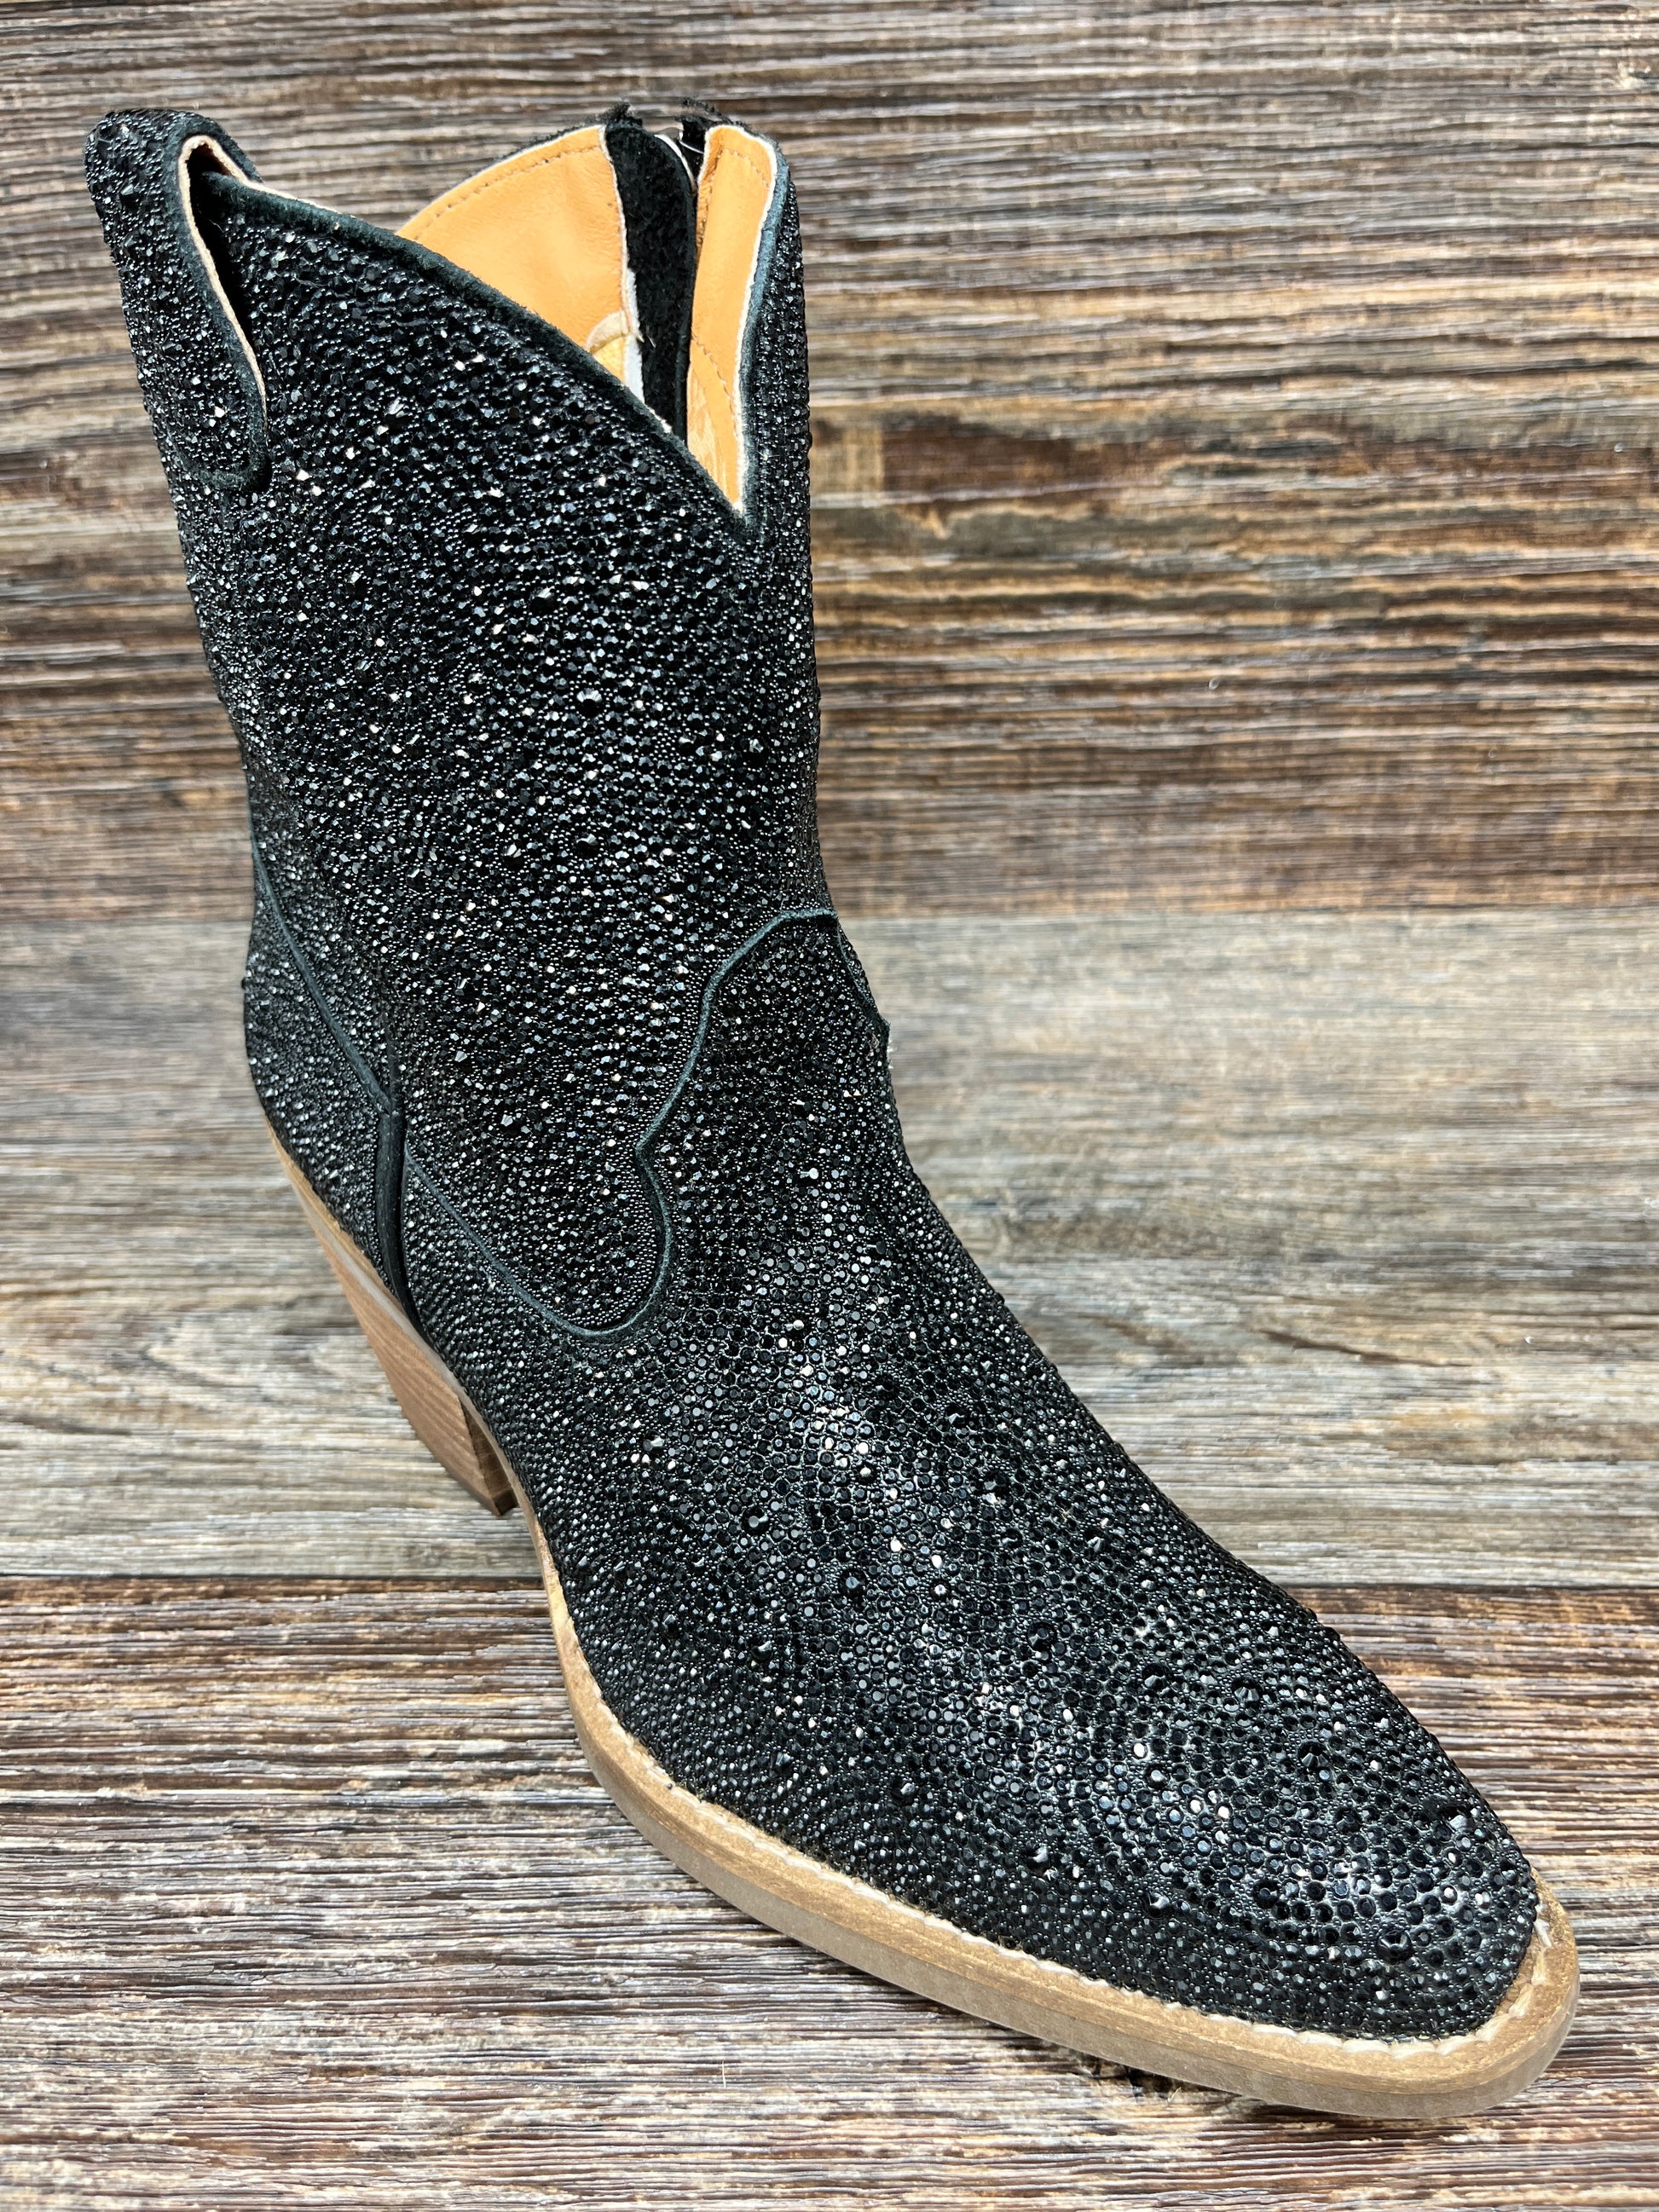 Glitzy Black Rhinestone Cowboy Boots